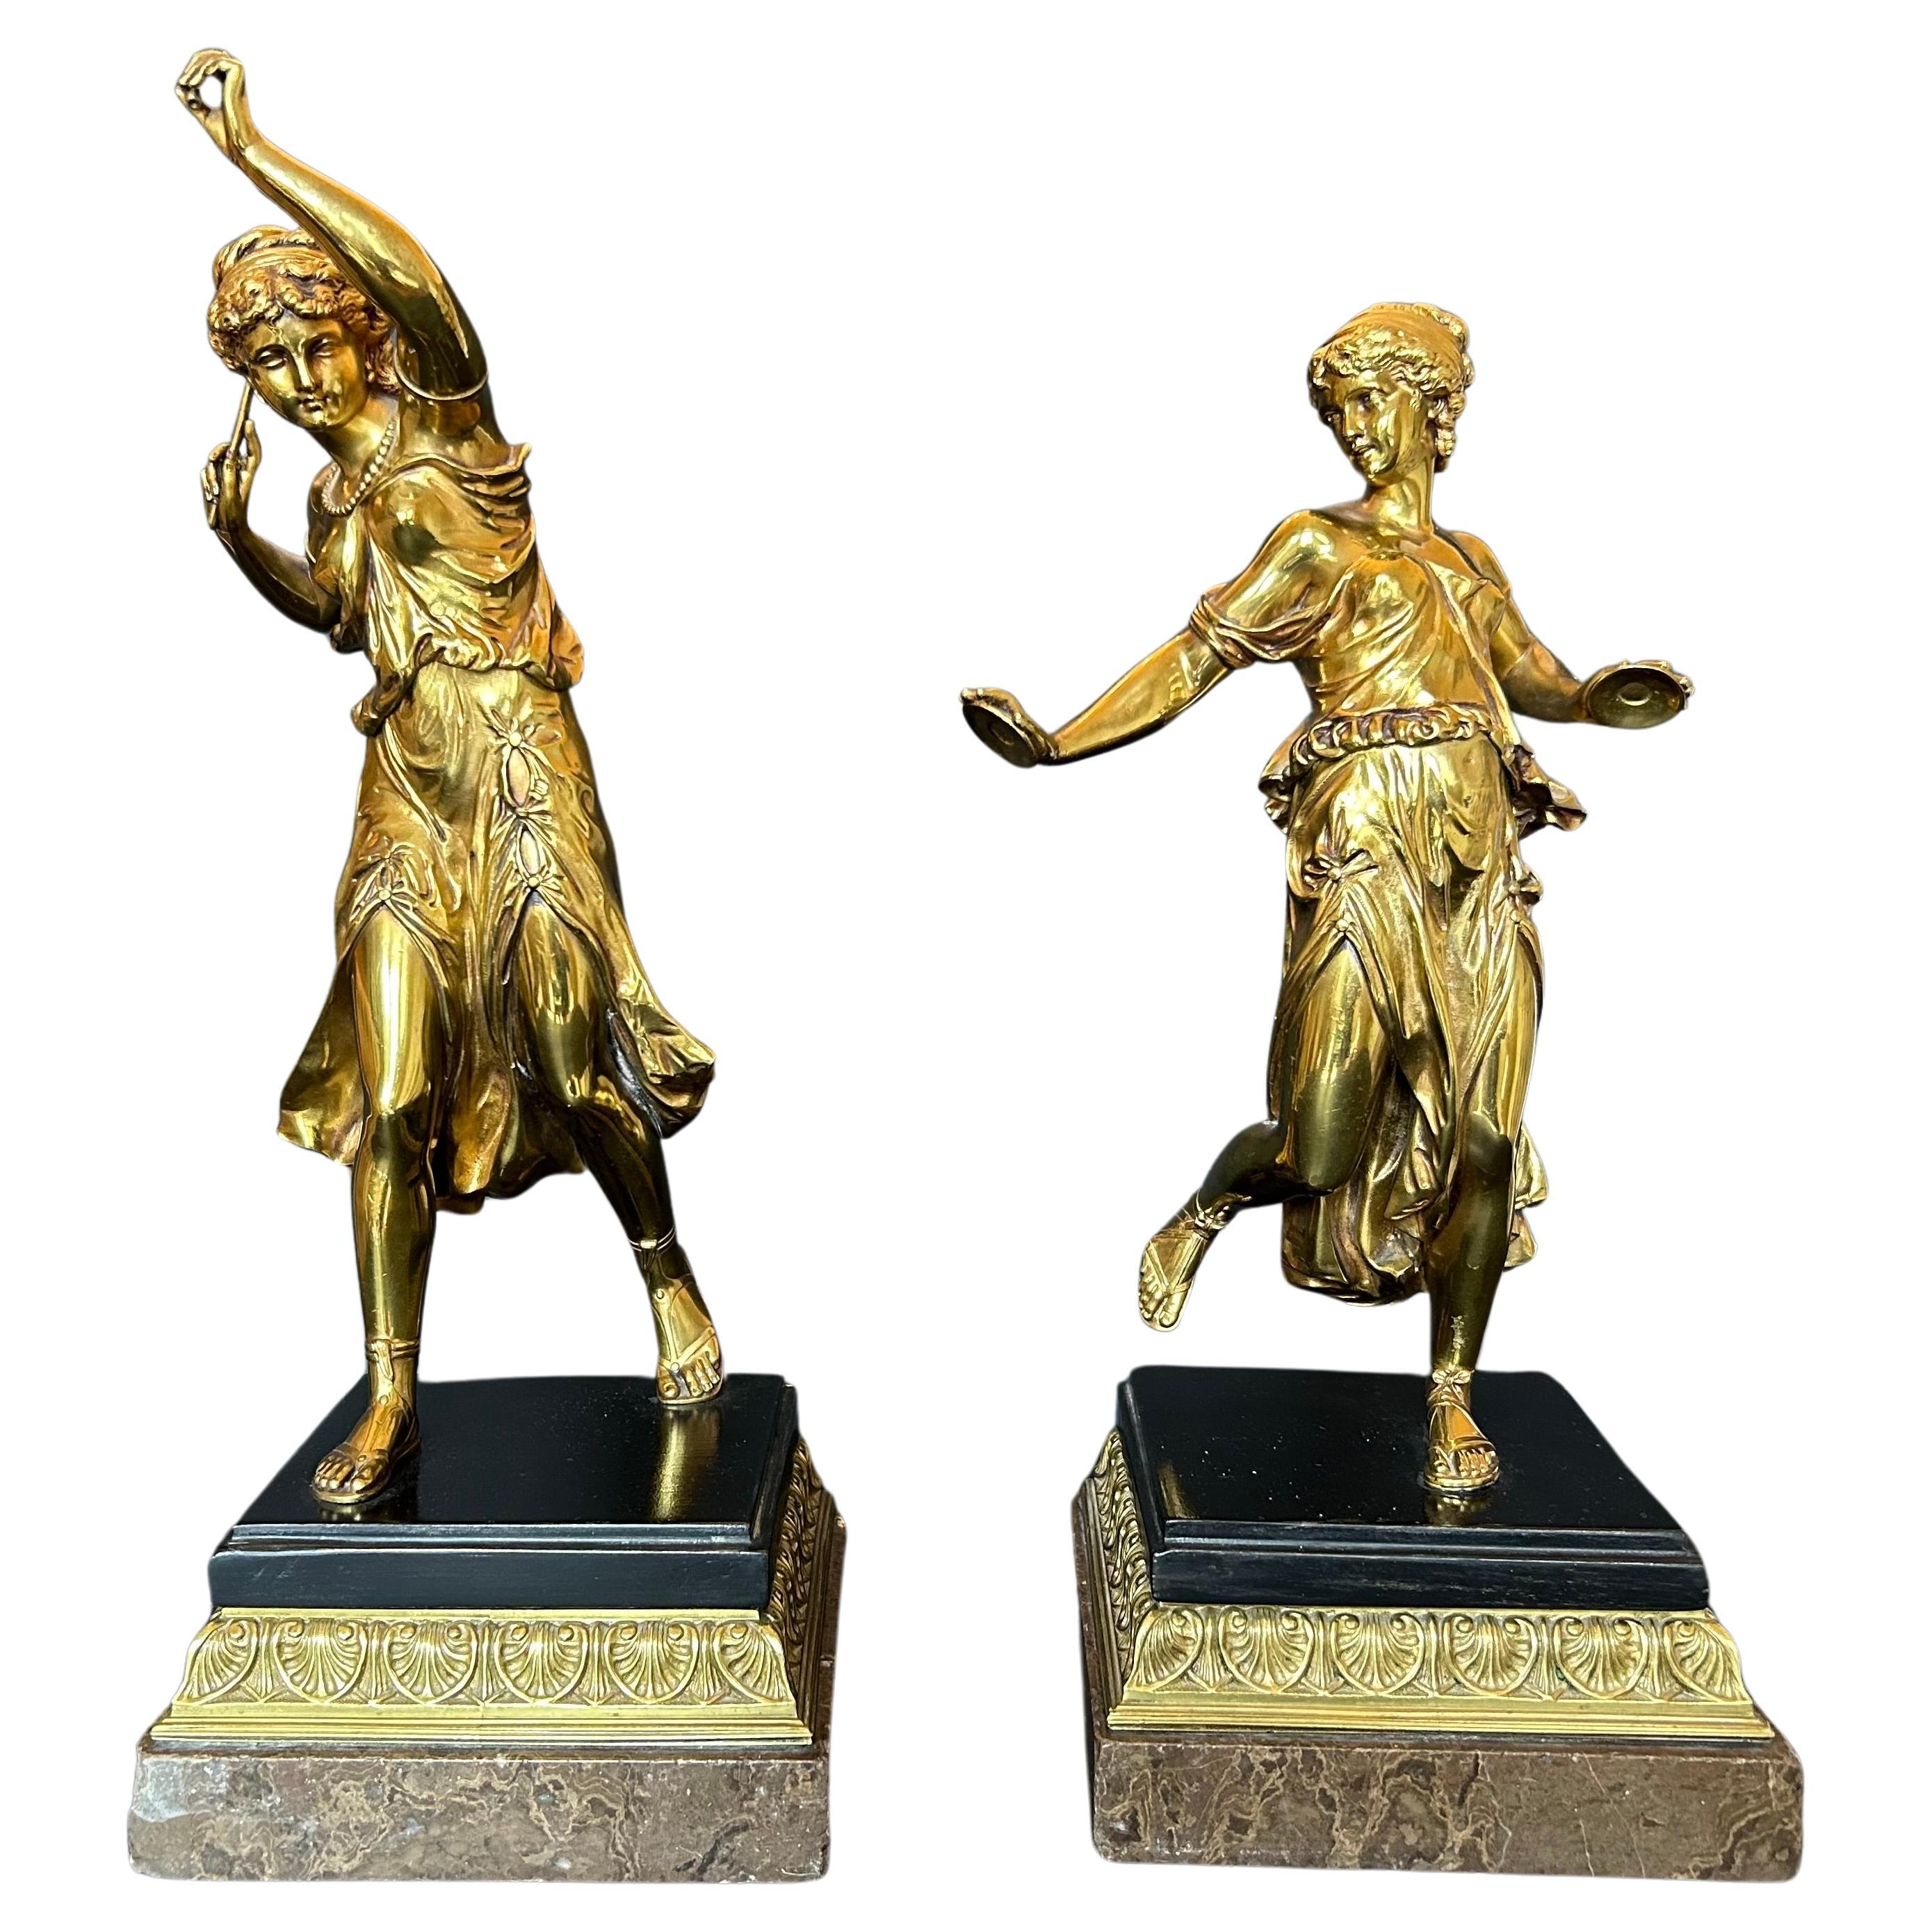 Magnifique paire de sculptures en bronze doré représentant deux danseurs dans le style grec classique, l'un tenant des cymbales et l'autre un bâton. Chacune repose sur une base en marbre à étages avec des détails en acanthe et en bronze doré. Début